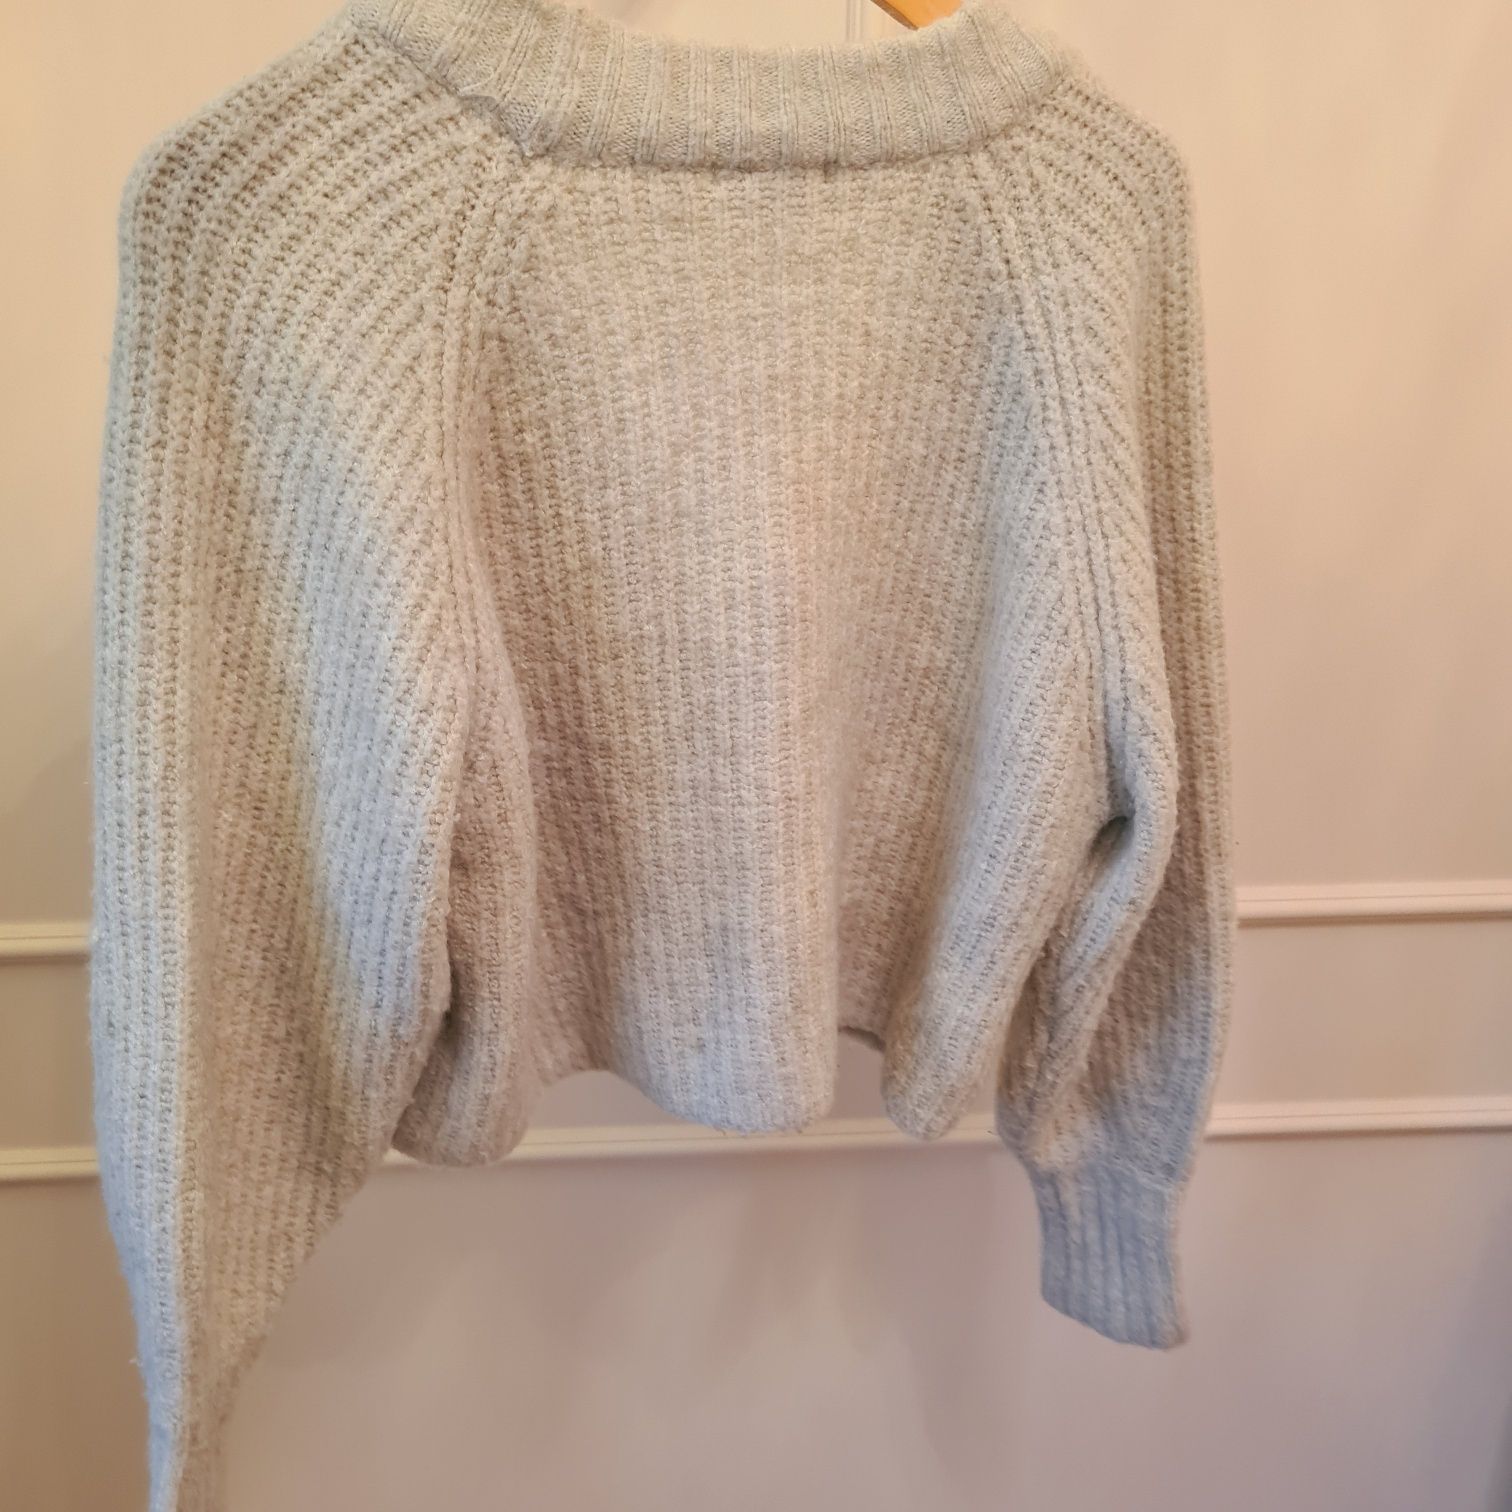 Miętowy krótki sweterek od Gina Tricot